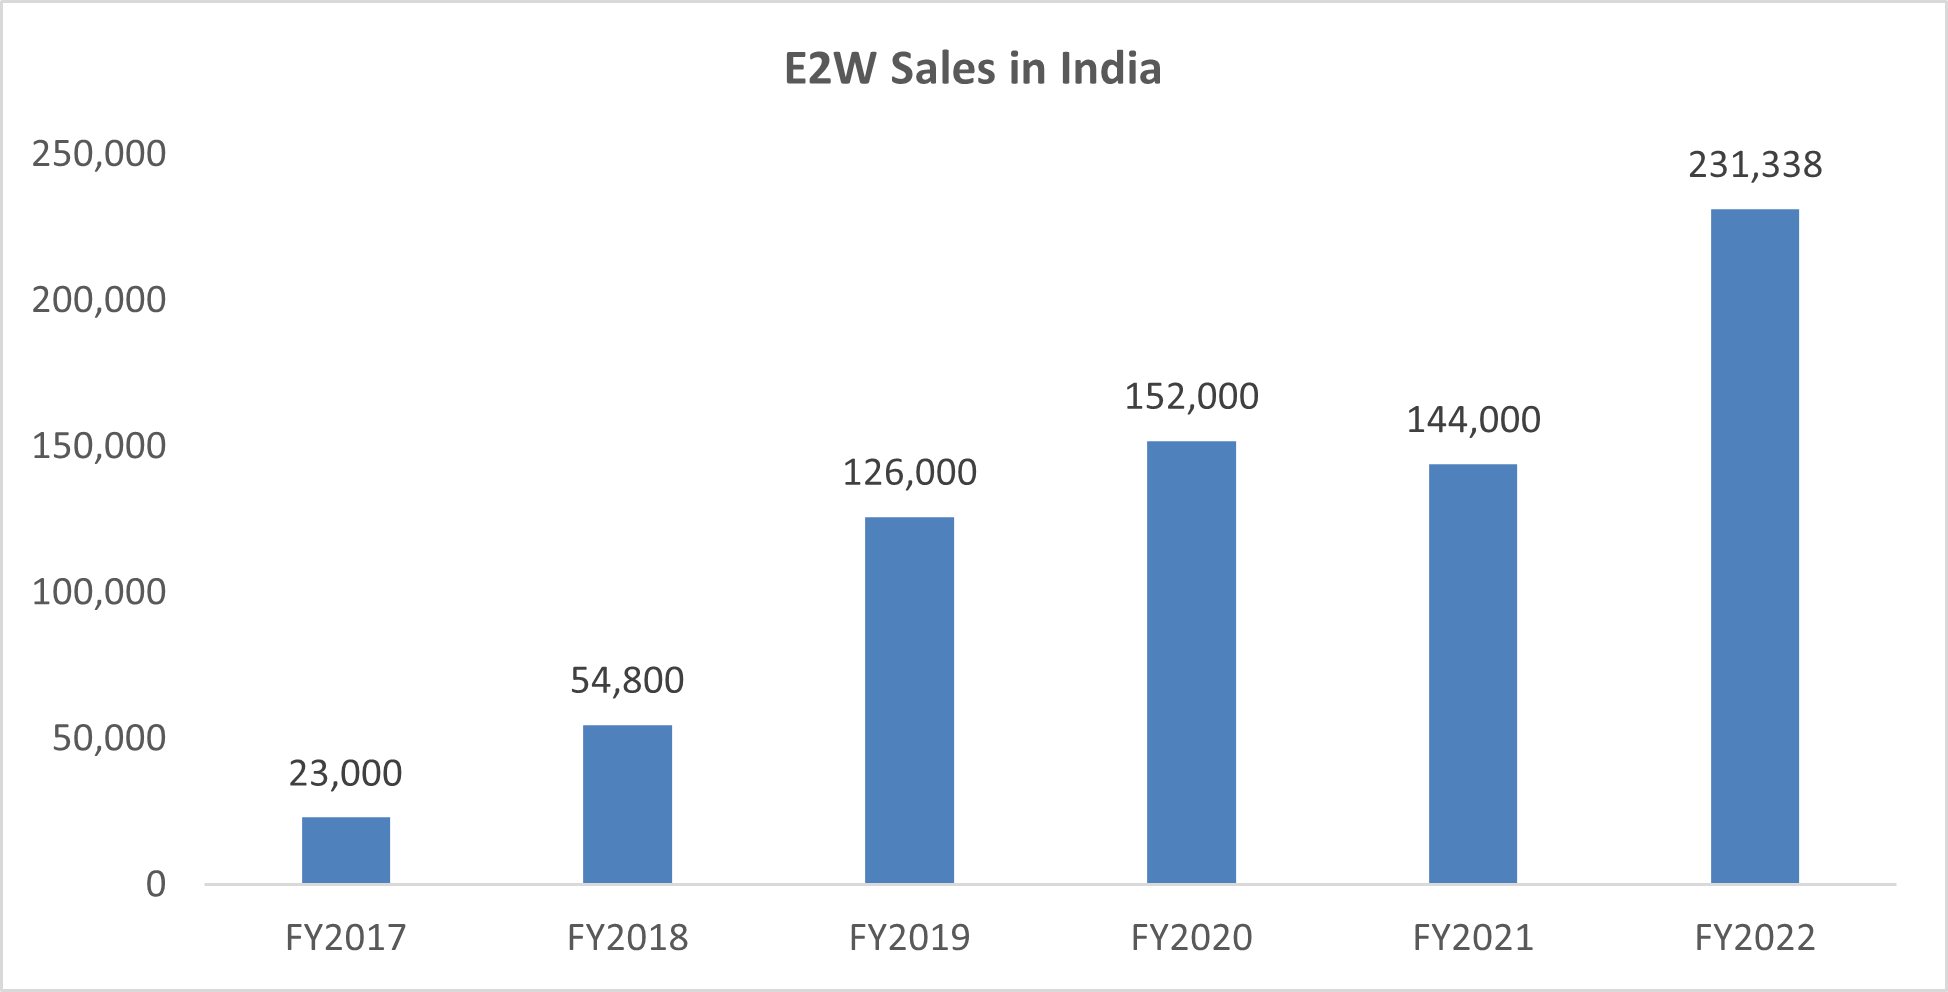 E2W sales in India